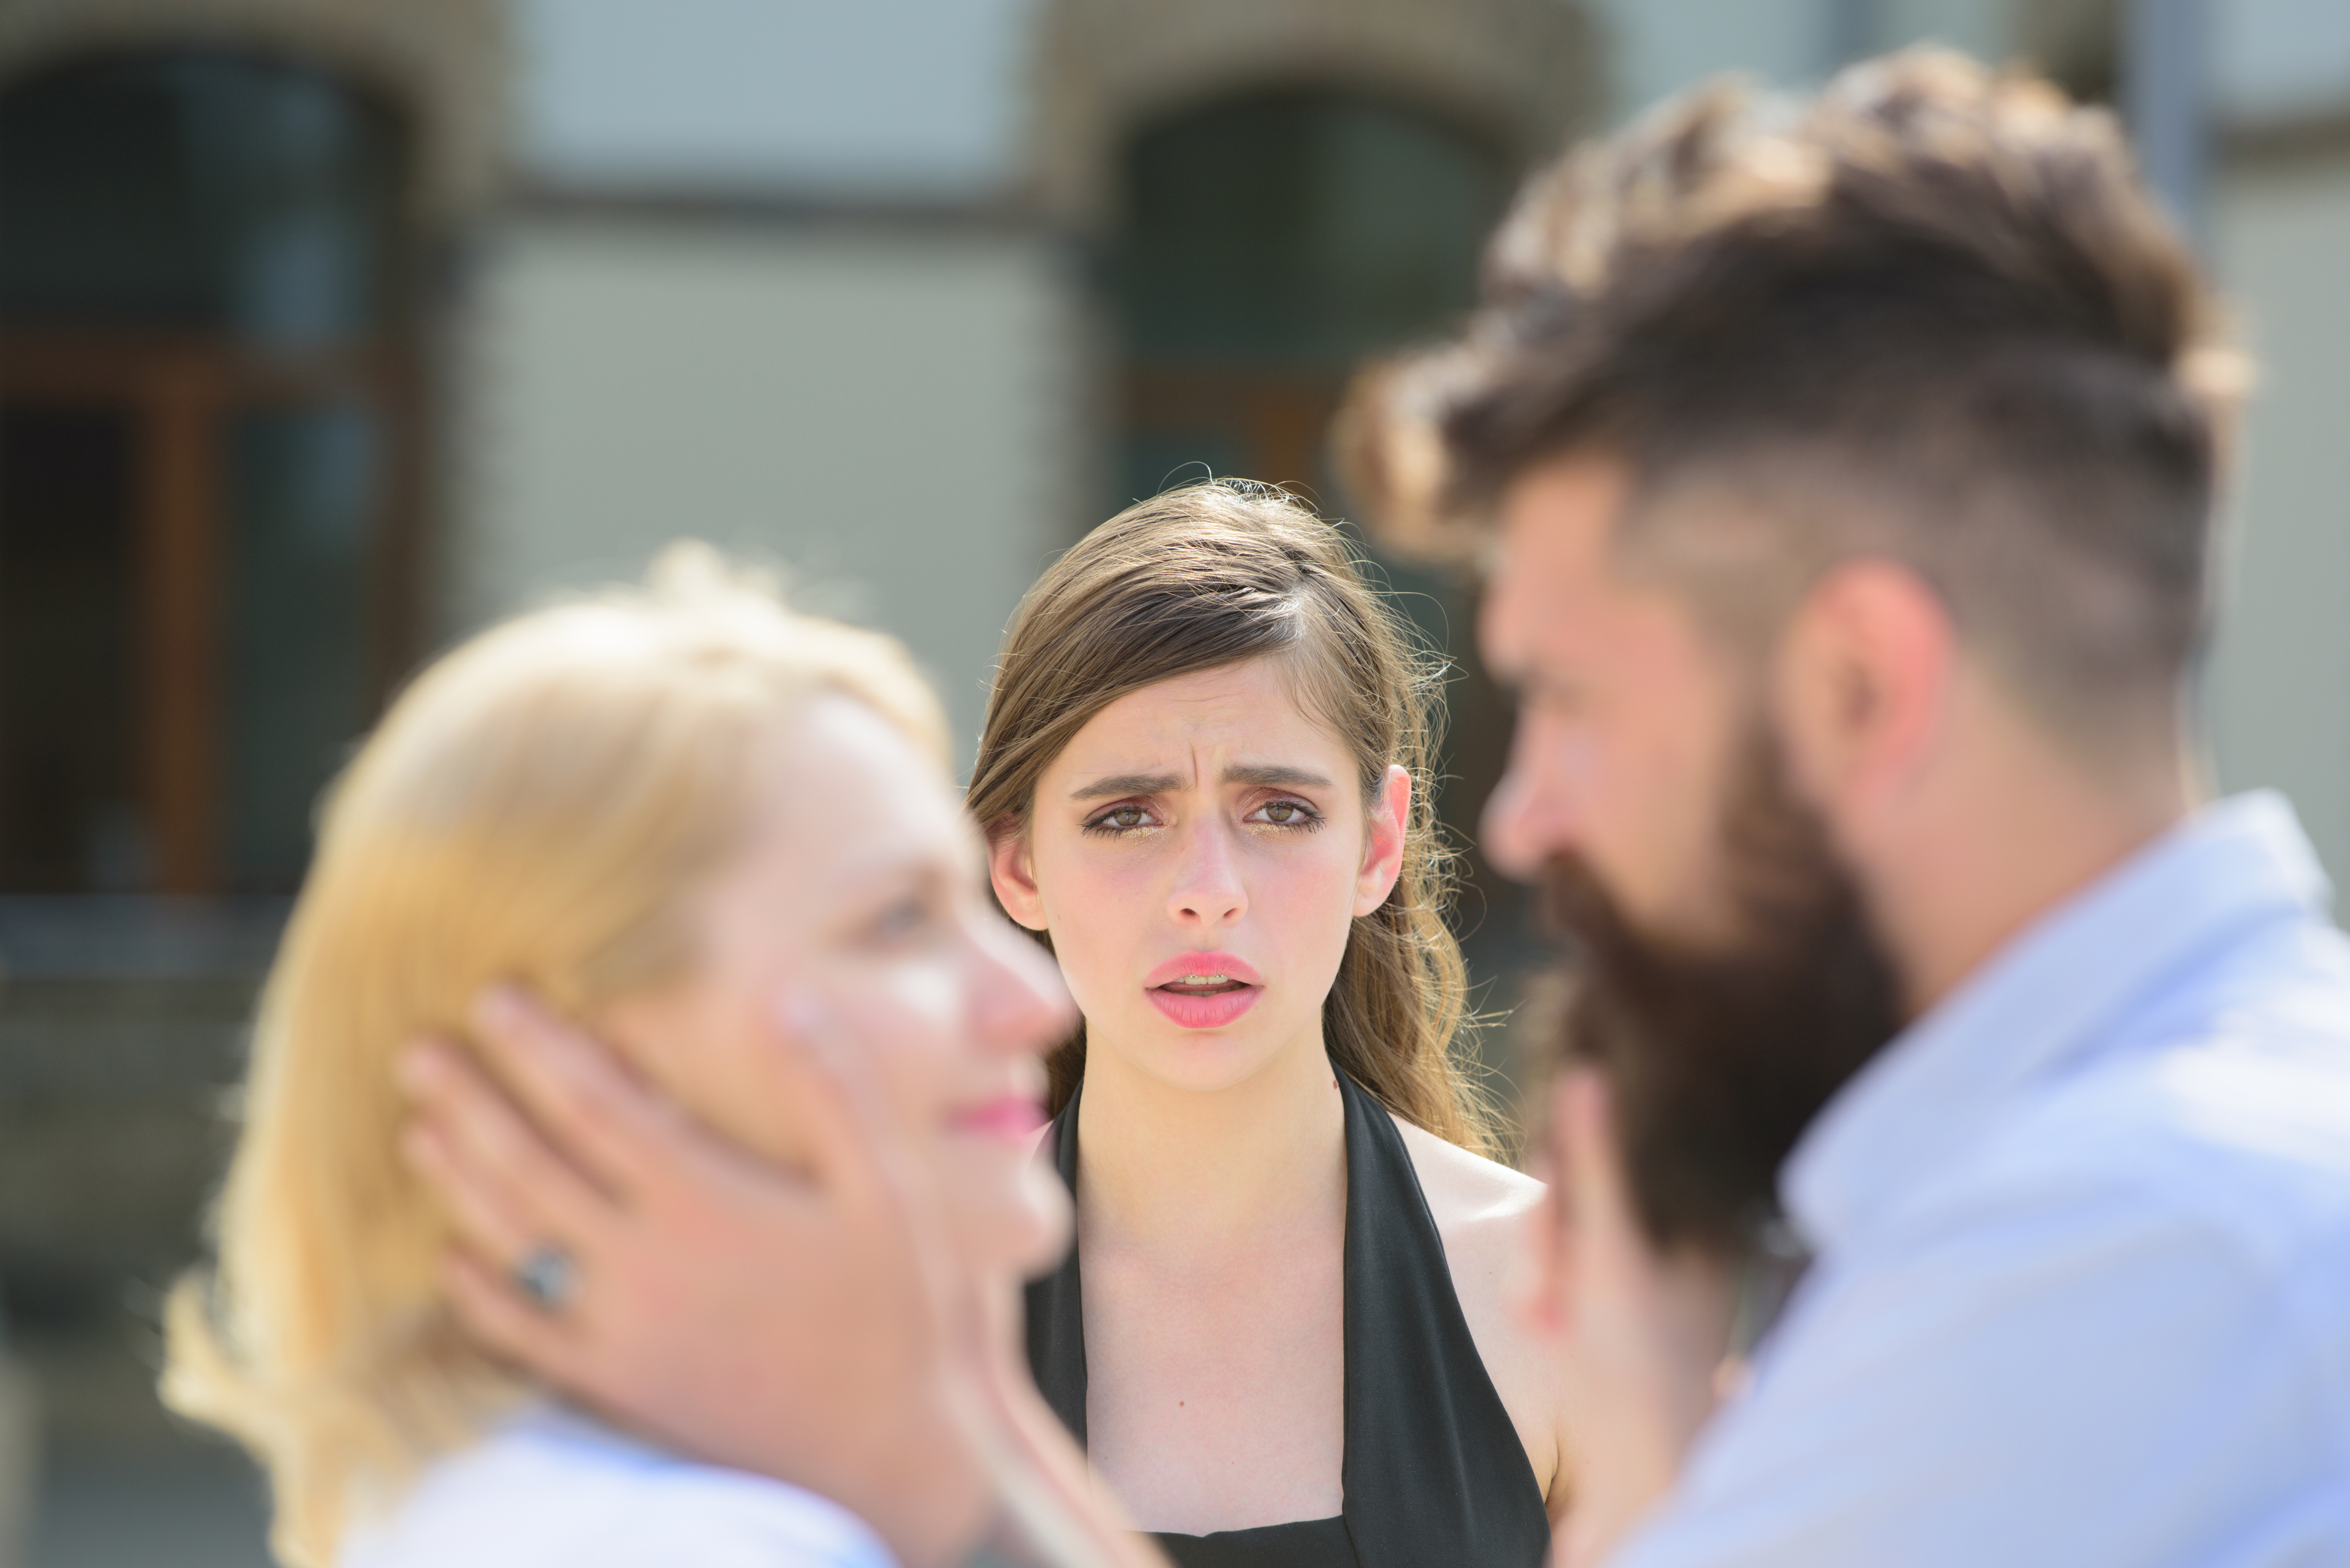 Une femme au cœur brisé voit son petit ami avec une autre femme | Source : Shutterstock